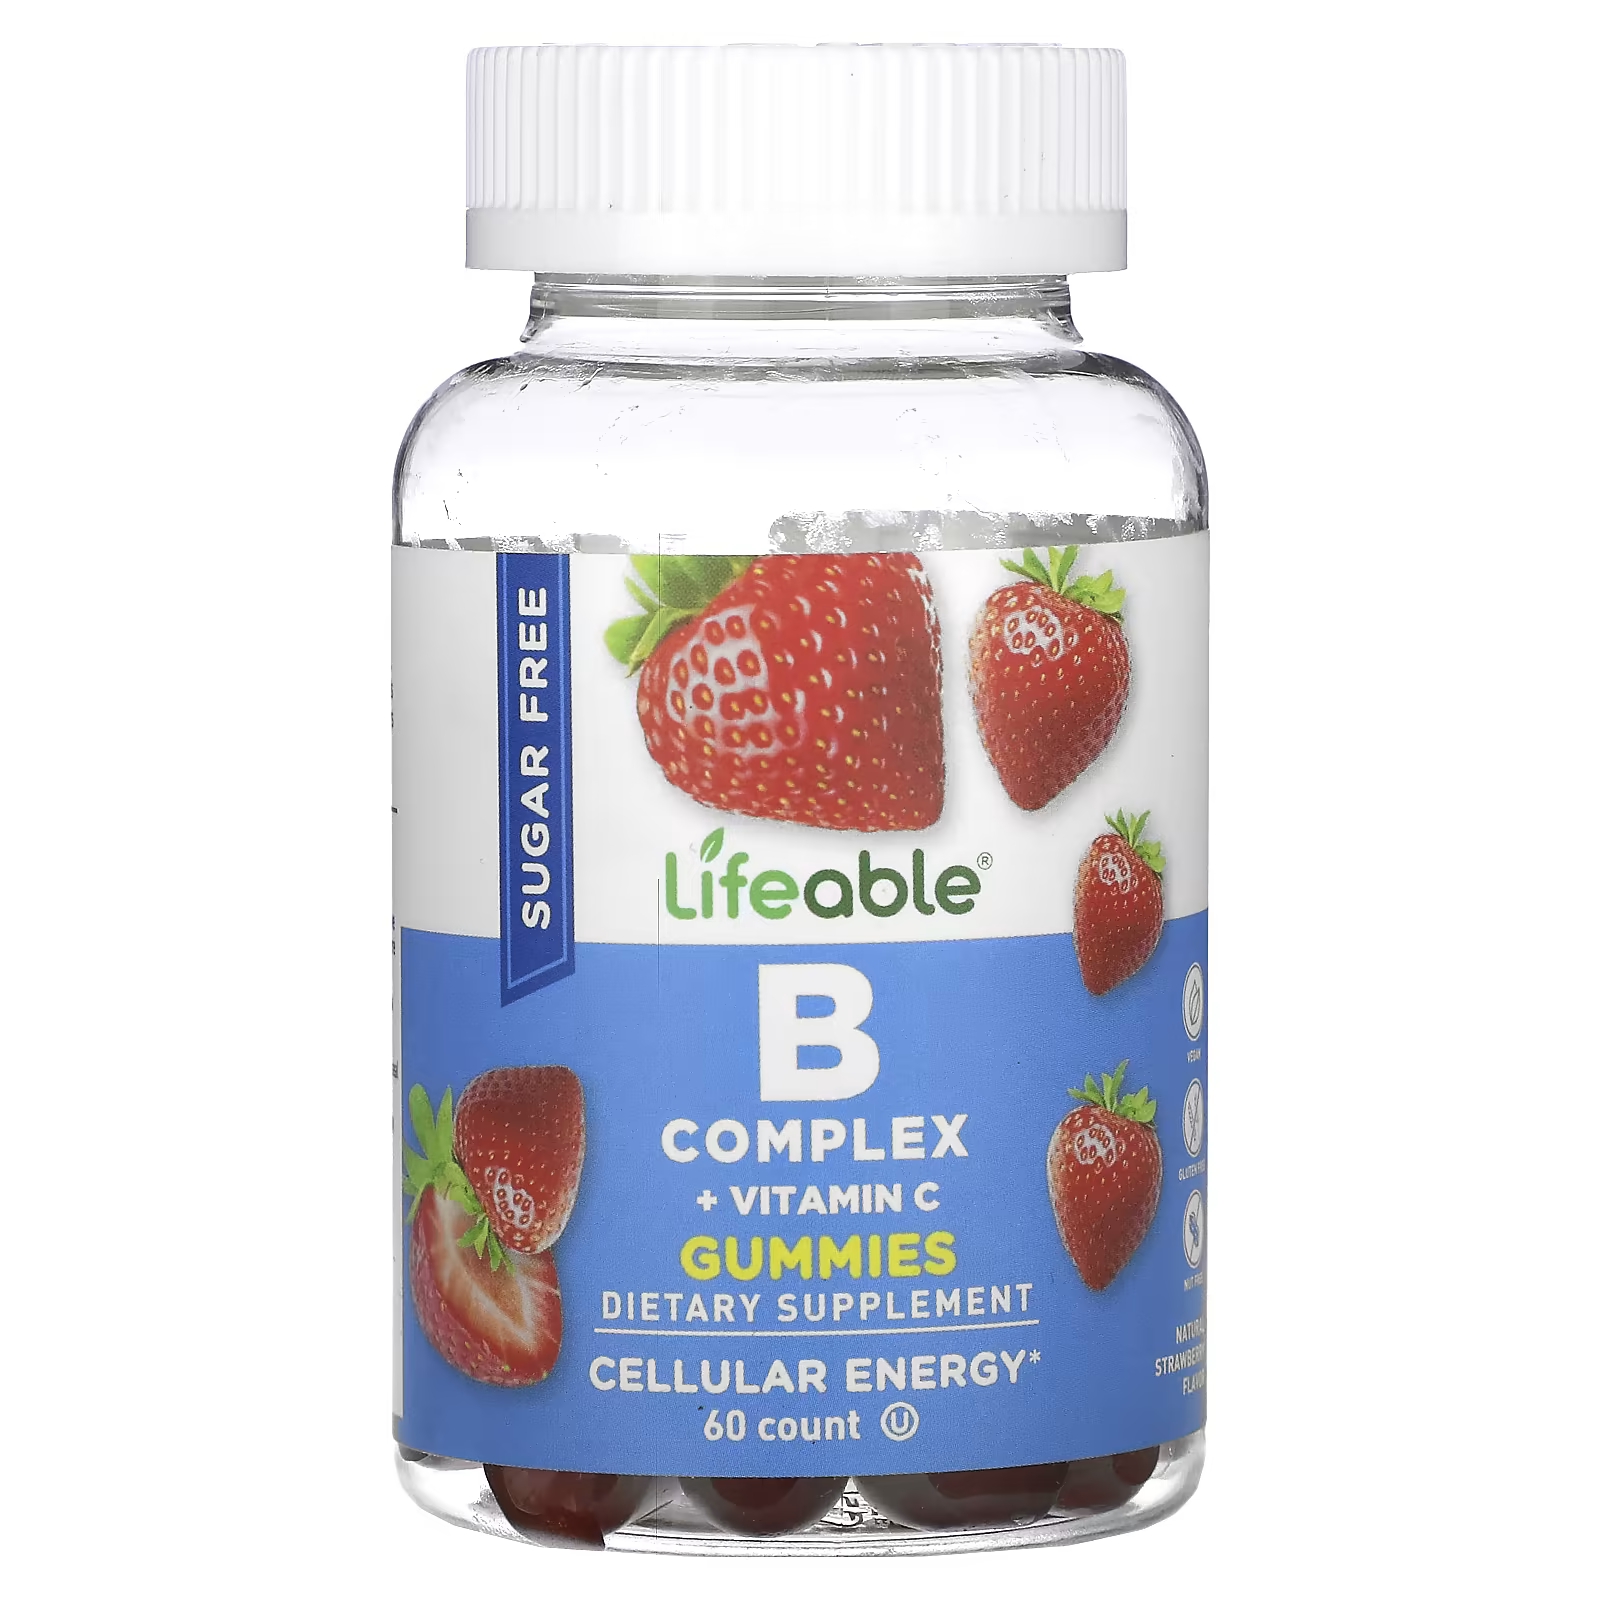 Lifeable B Complex + витамин C жевательные конфеты без сахара, натуральная клубника, 60 жевательных конфет жевательные конфеты lifeable kids с пребиотическим волокном натуральные ягоды 60 жевательных конфет